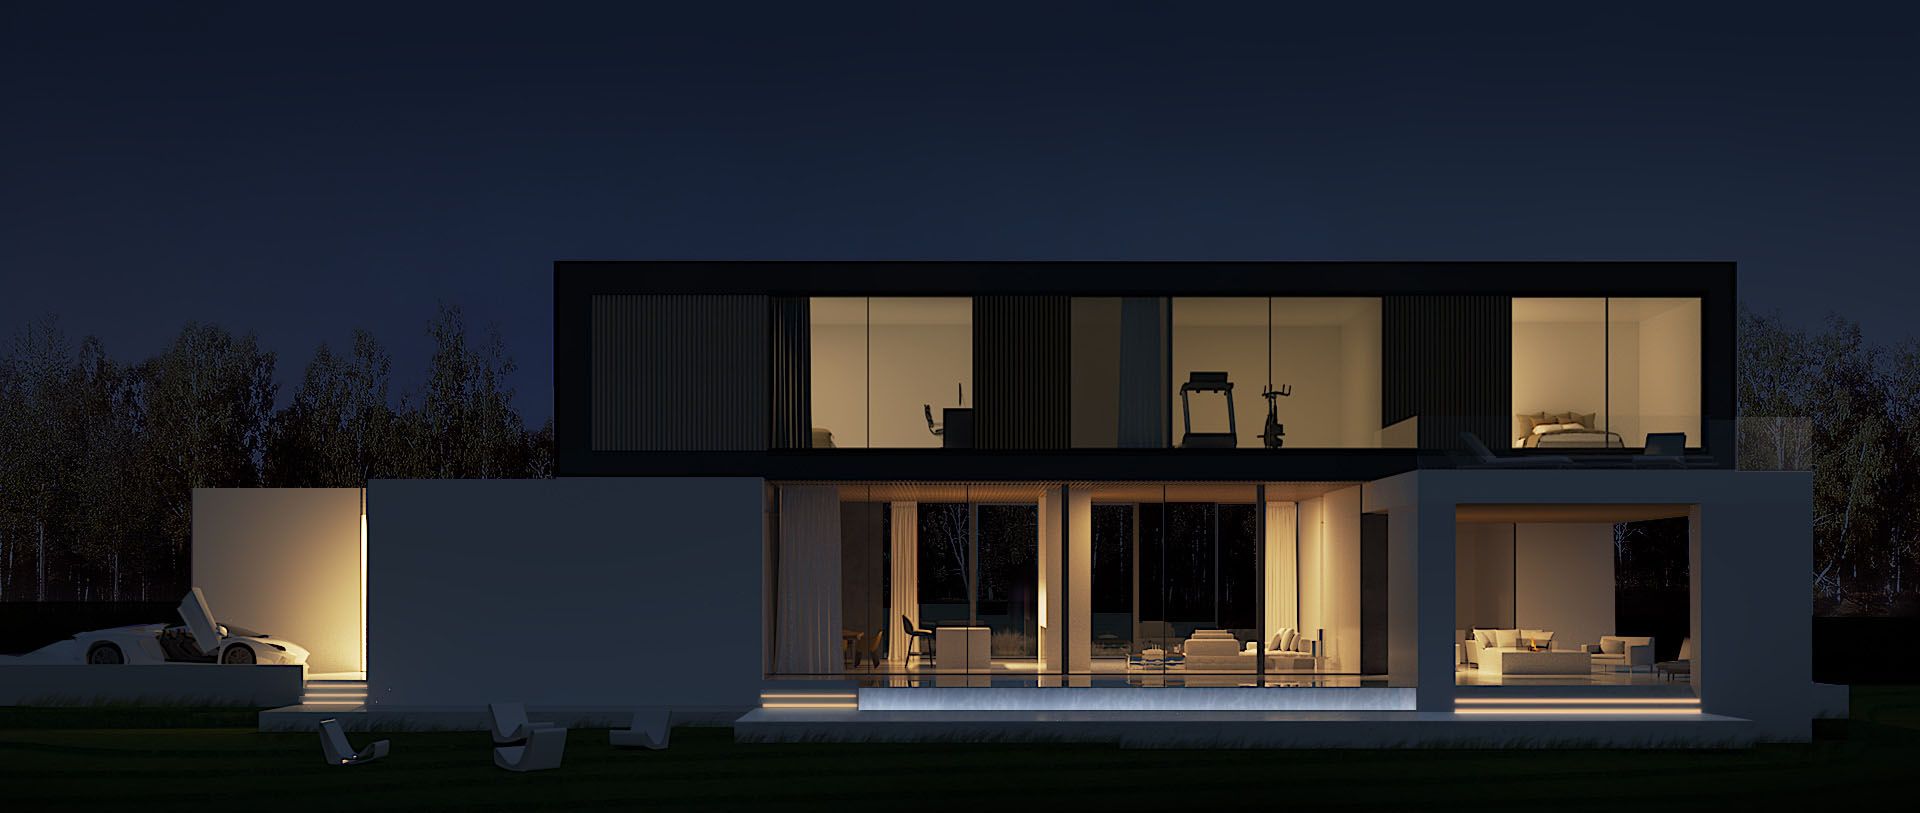 Smart House to zwarty, nowoczesny budynek o minimalistycznej formie architektonicznej. Wizualizacje & Grafika: BXBstudio Bogusław Barnaś & Looma